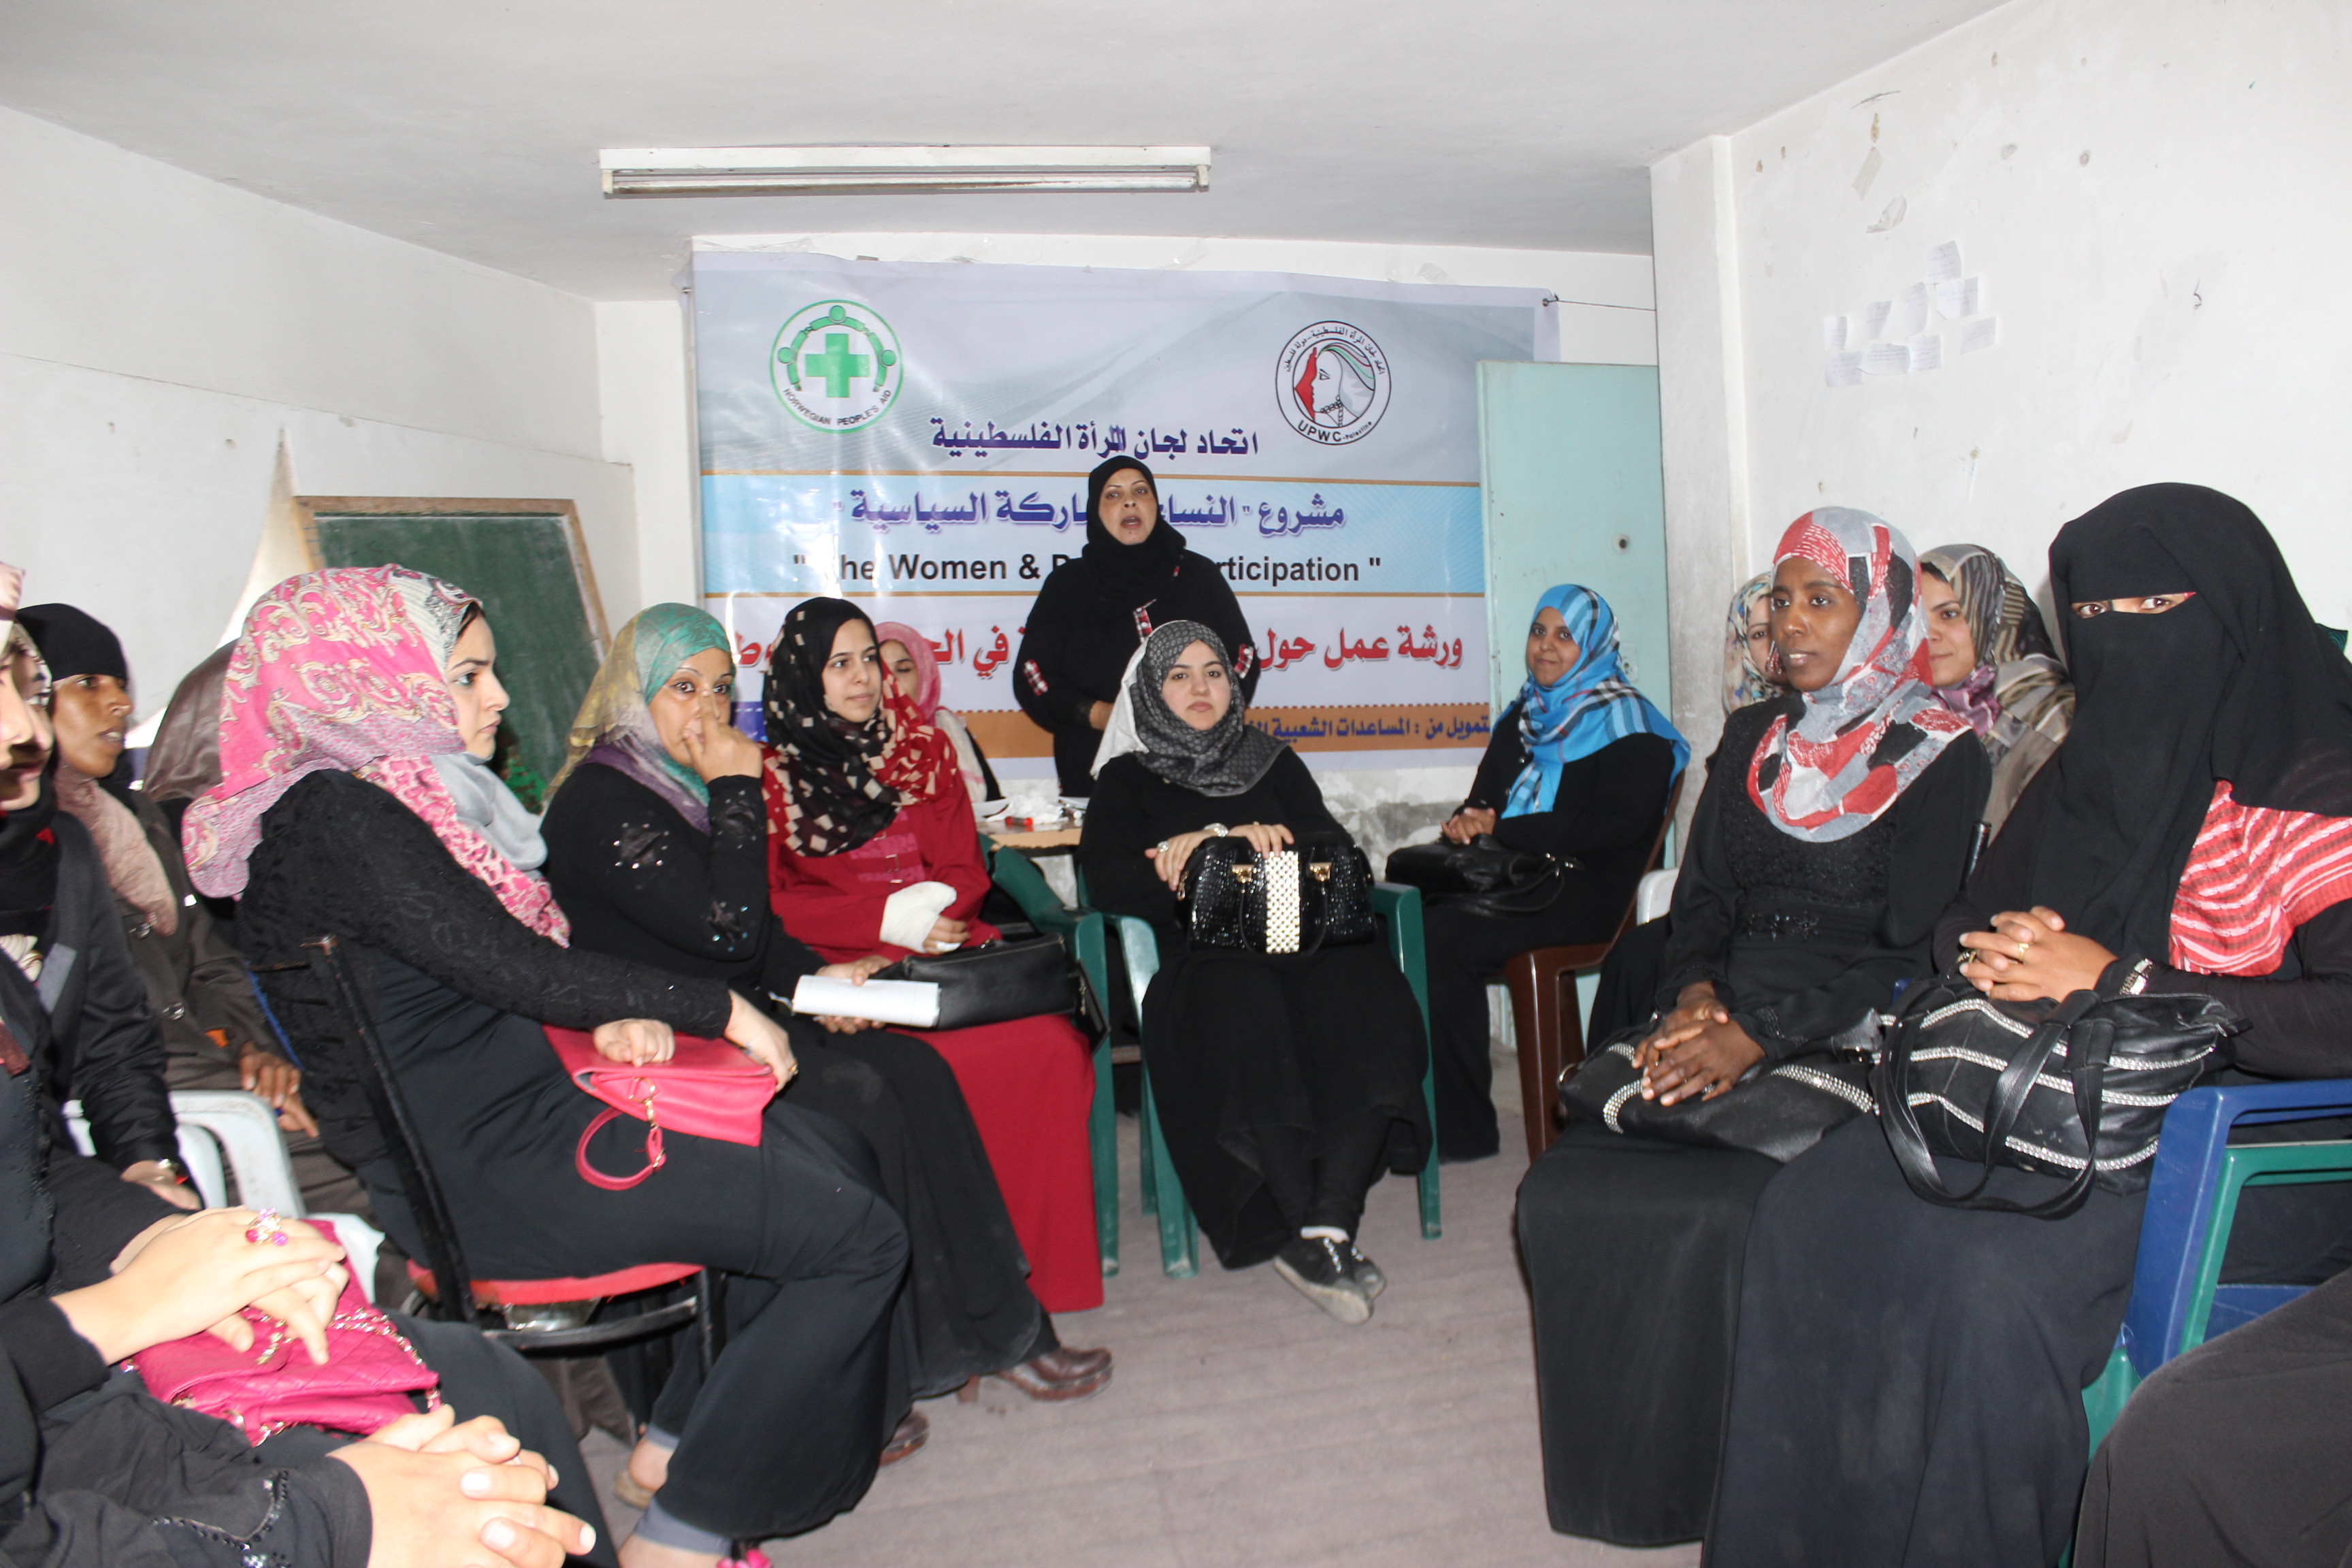 رفح: اتحاد لجان المرأة الفلسطينية يؤكد على ضرورة تعزيز مشاركة المرأة في الحياة السياسية ووصولها لمراكز صنع القرار